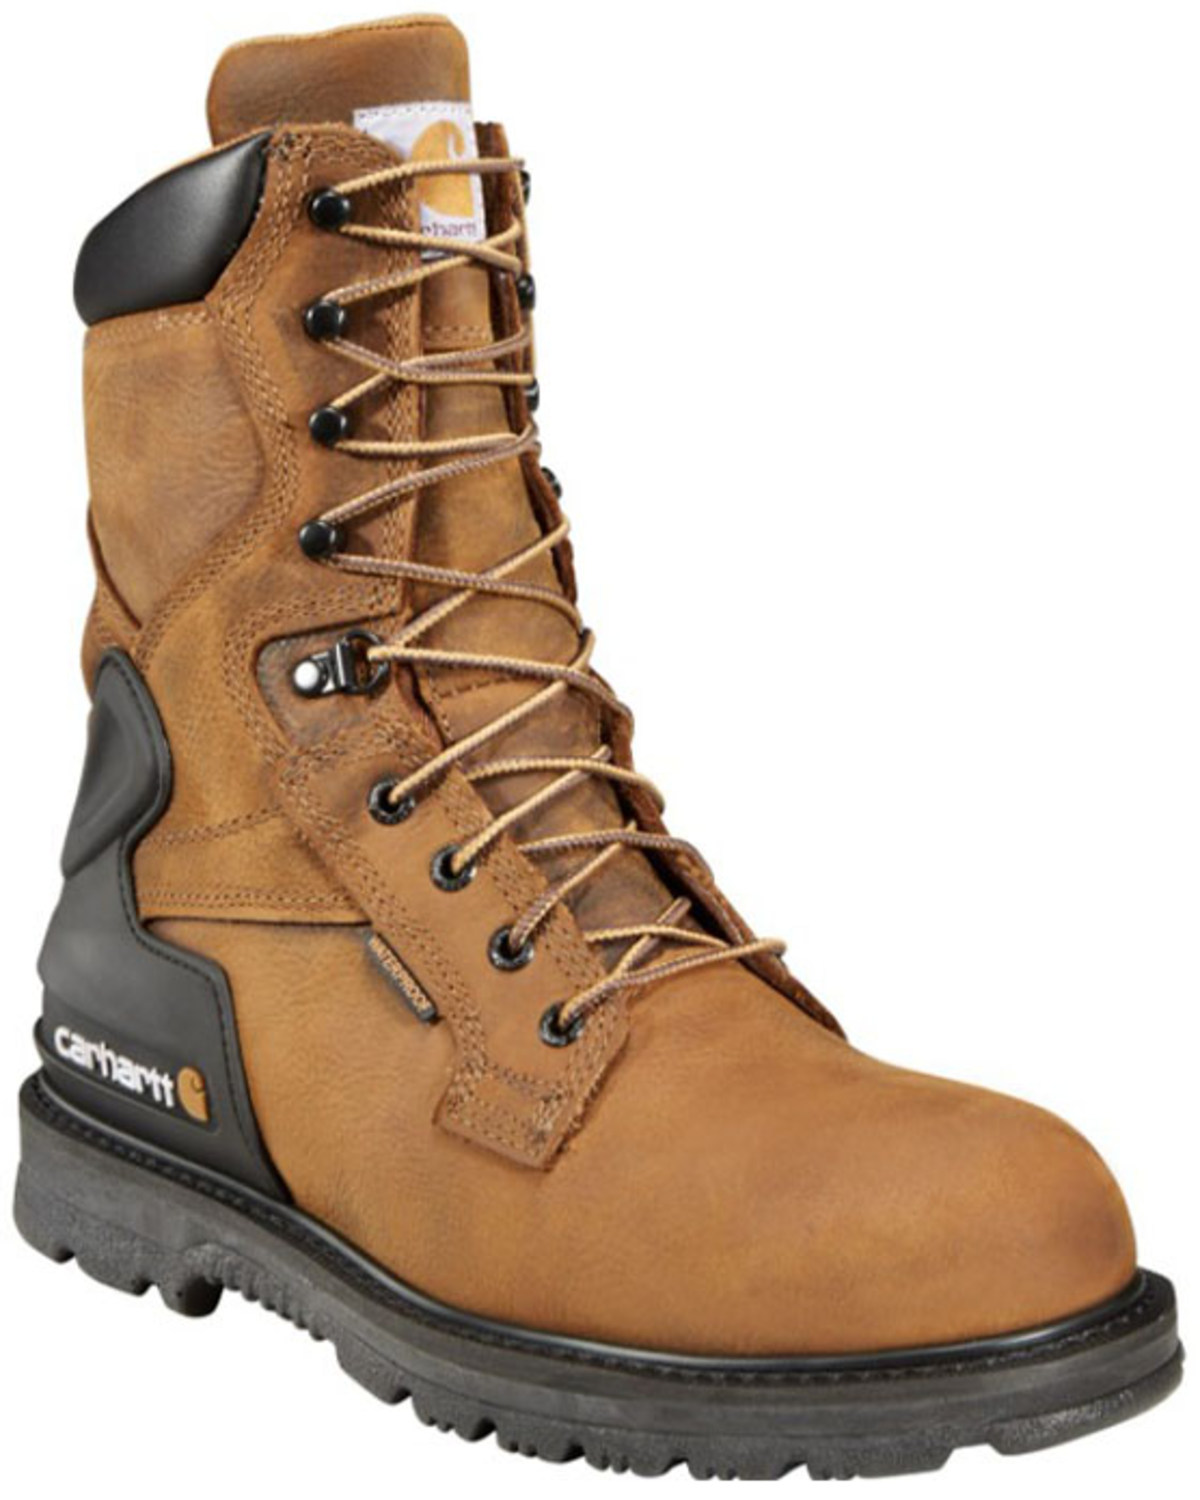 Carhartt Men's 8" Bison Waterproof Work Boots - Steel Toe